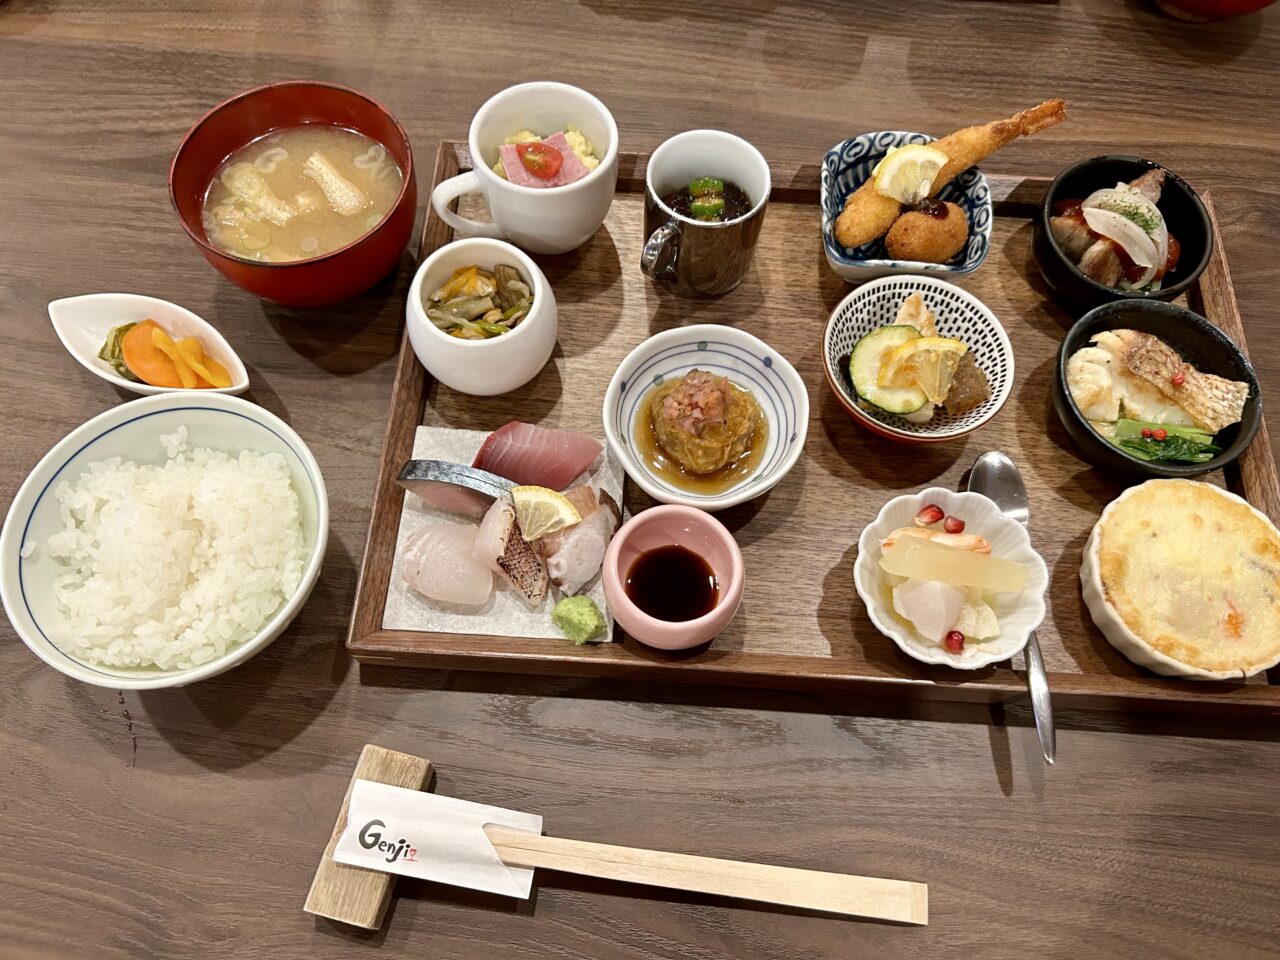 大阪・帝塚山にある和洋折衷の創作料理「Genji(源氏)」の弁当10品です。